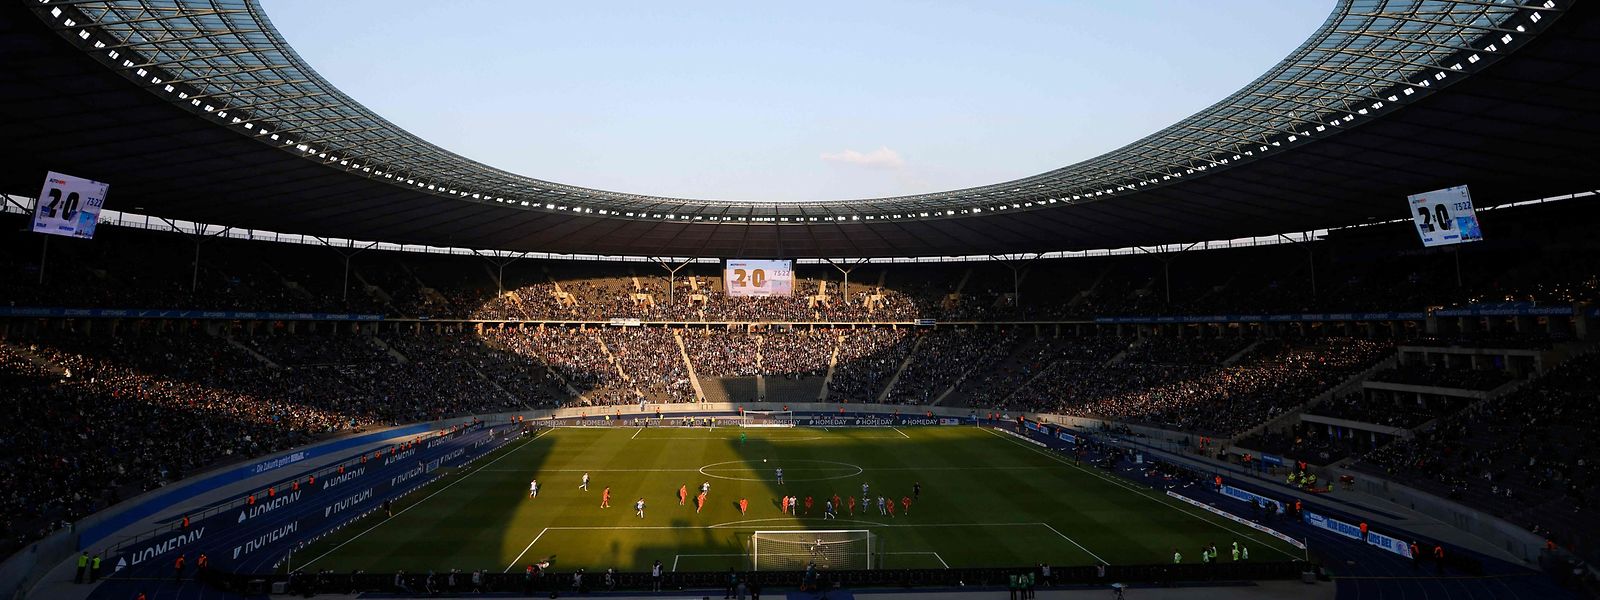 In das Berliner Olympiastadion dürfen bei der EM bei einem Fassungsvermögen von gut 70.000 die meisten Zuschauer.